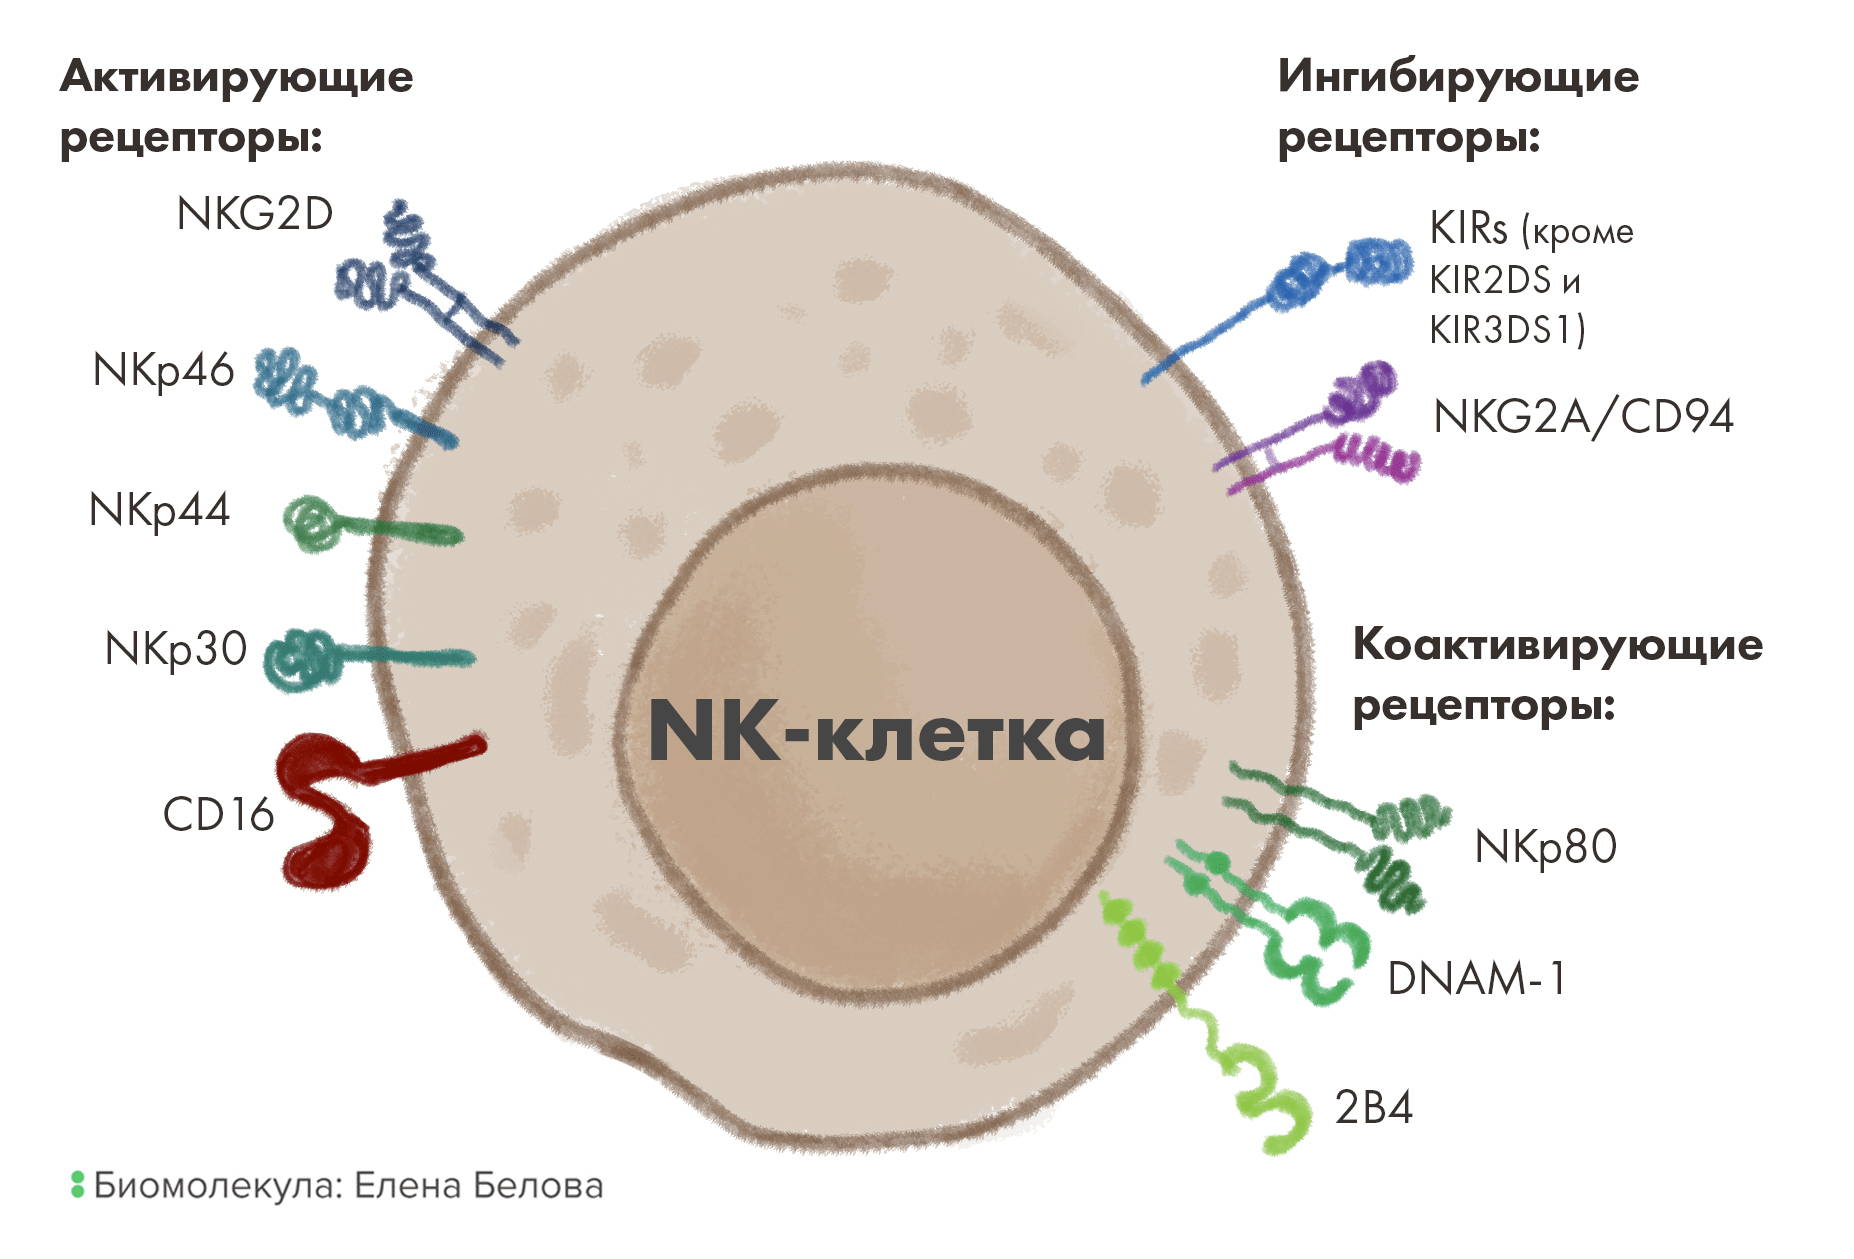 Основные активирующие, ко-активирующие и ингибирующие рецепторы на поверхности NK-клеток